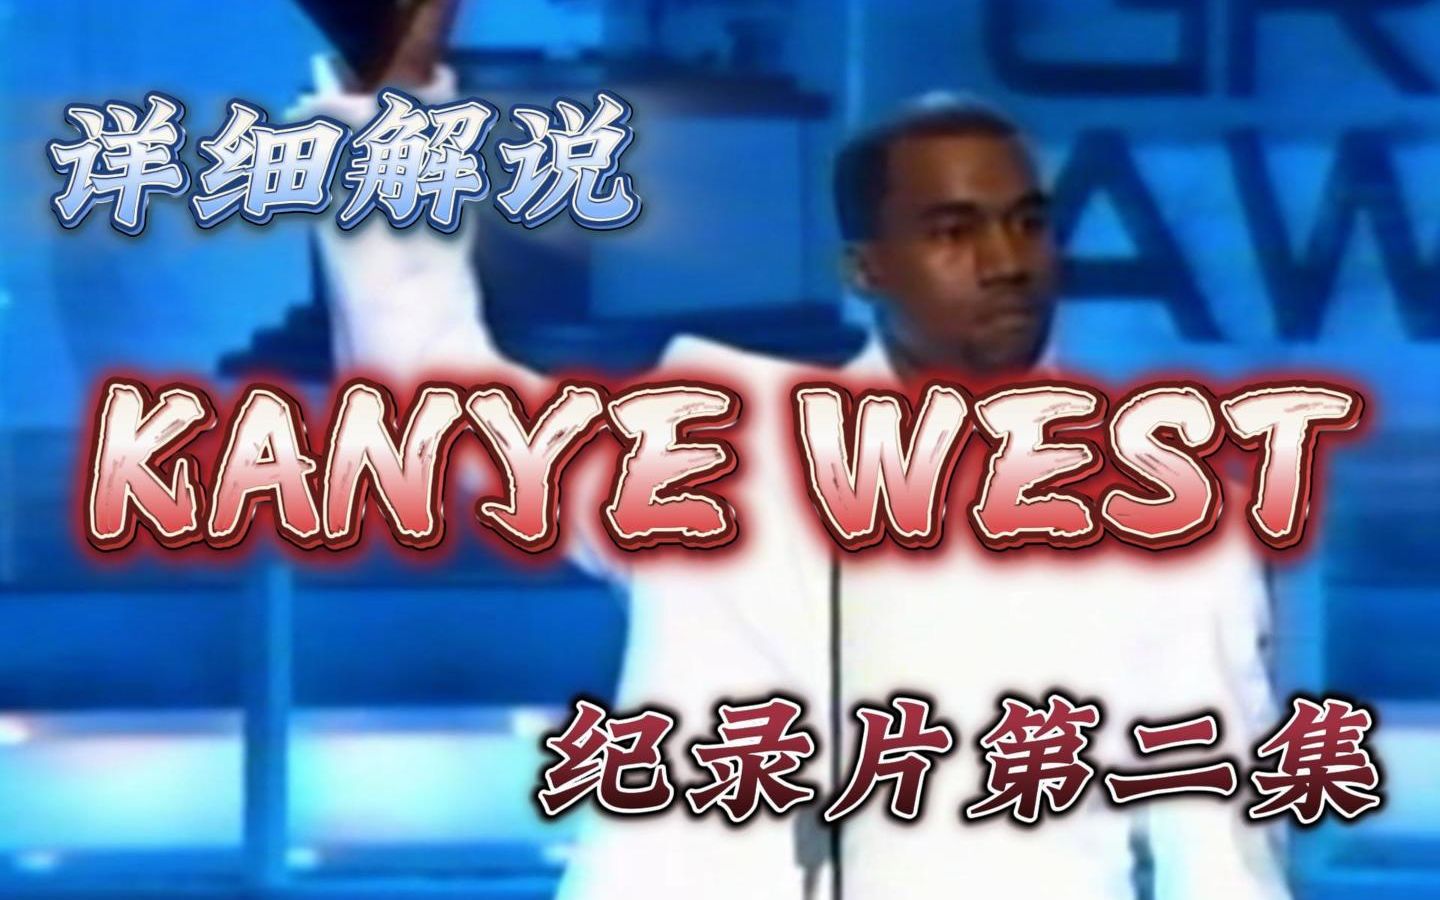 【详细解说Kanye第二集纪录片】一位影响本世代音乐和潮流的Kanye West，到底是天才还是疯子？